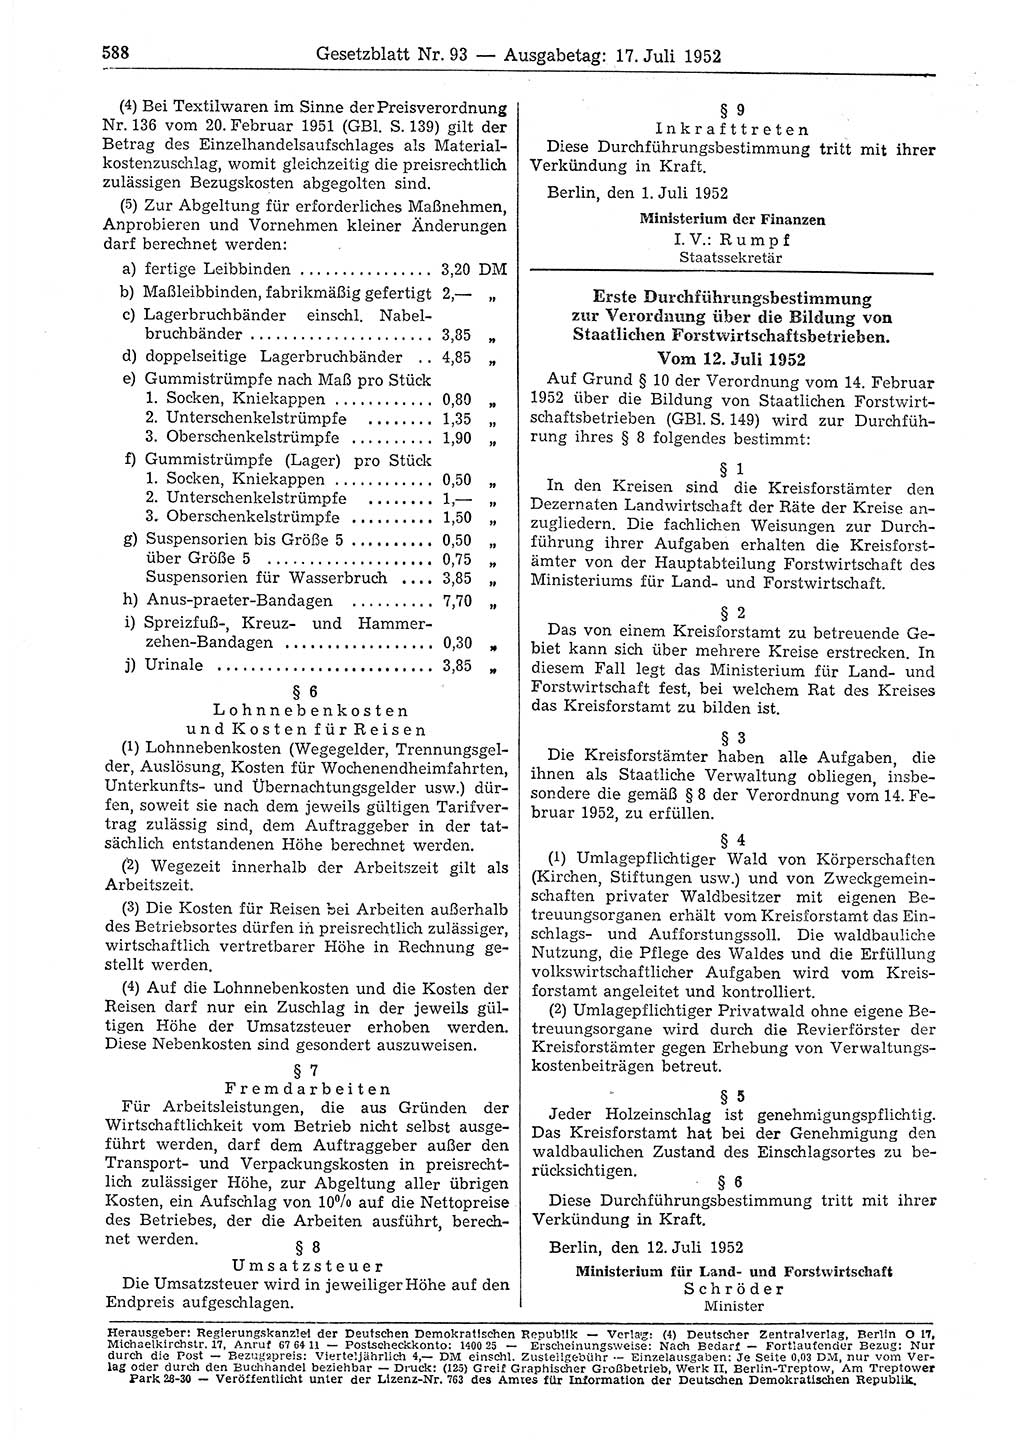 Gesetzblatt (GBl.) der Deutschen Demokratischen Republik (DDR) 1952, Seite 588 (GBl. DDR 1952, S. 588)